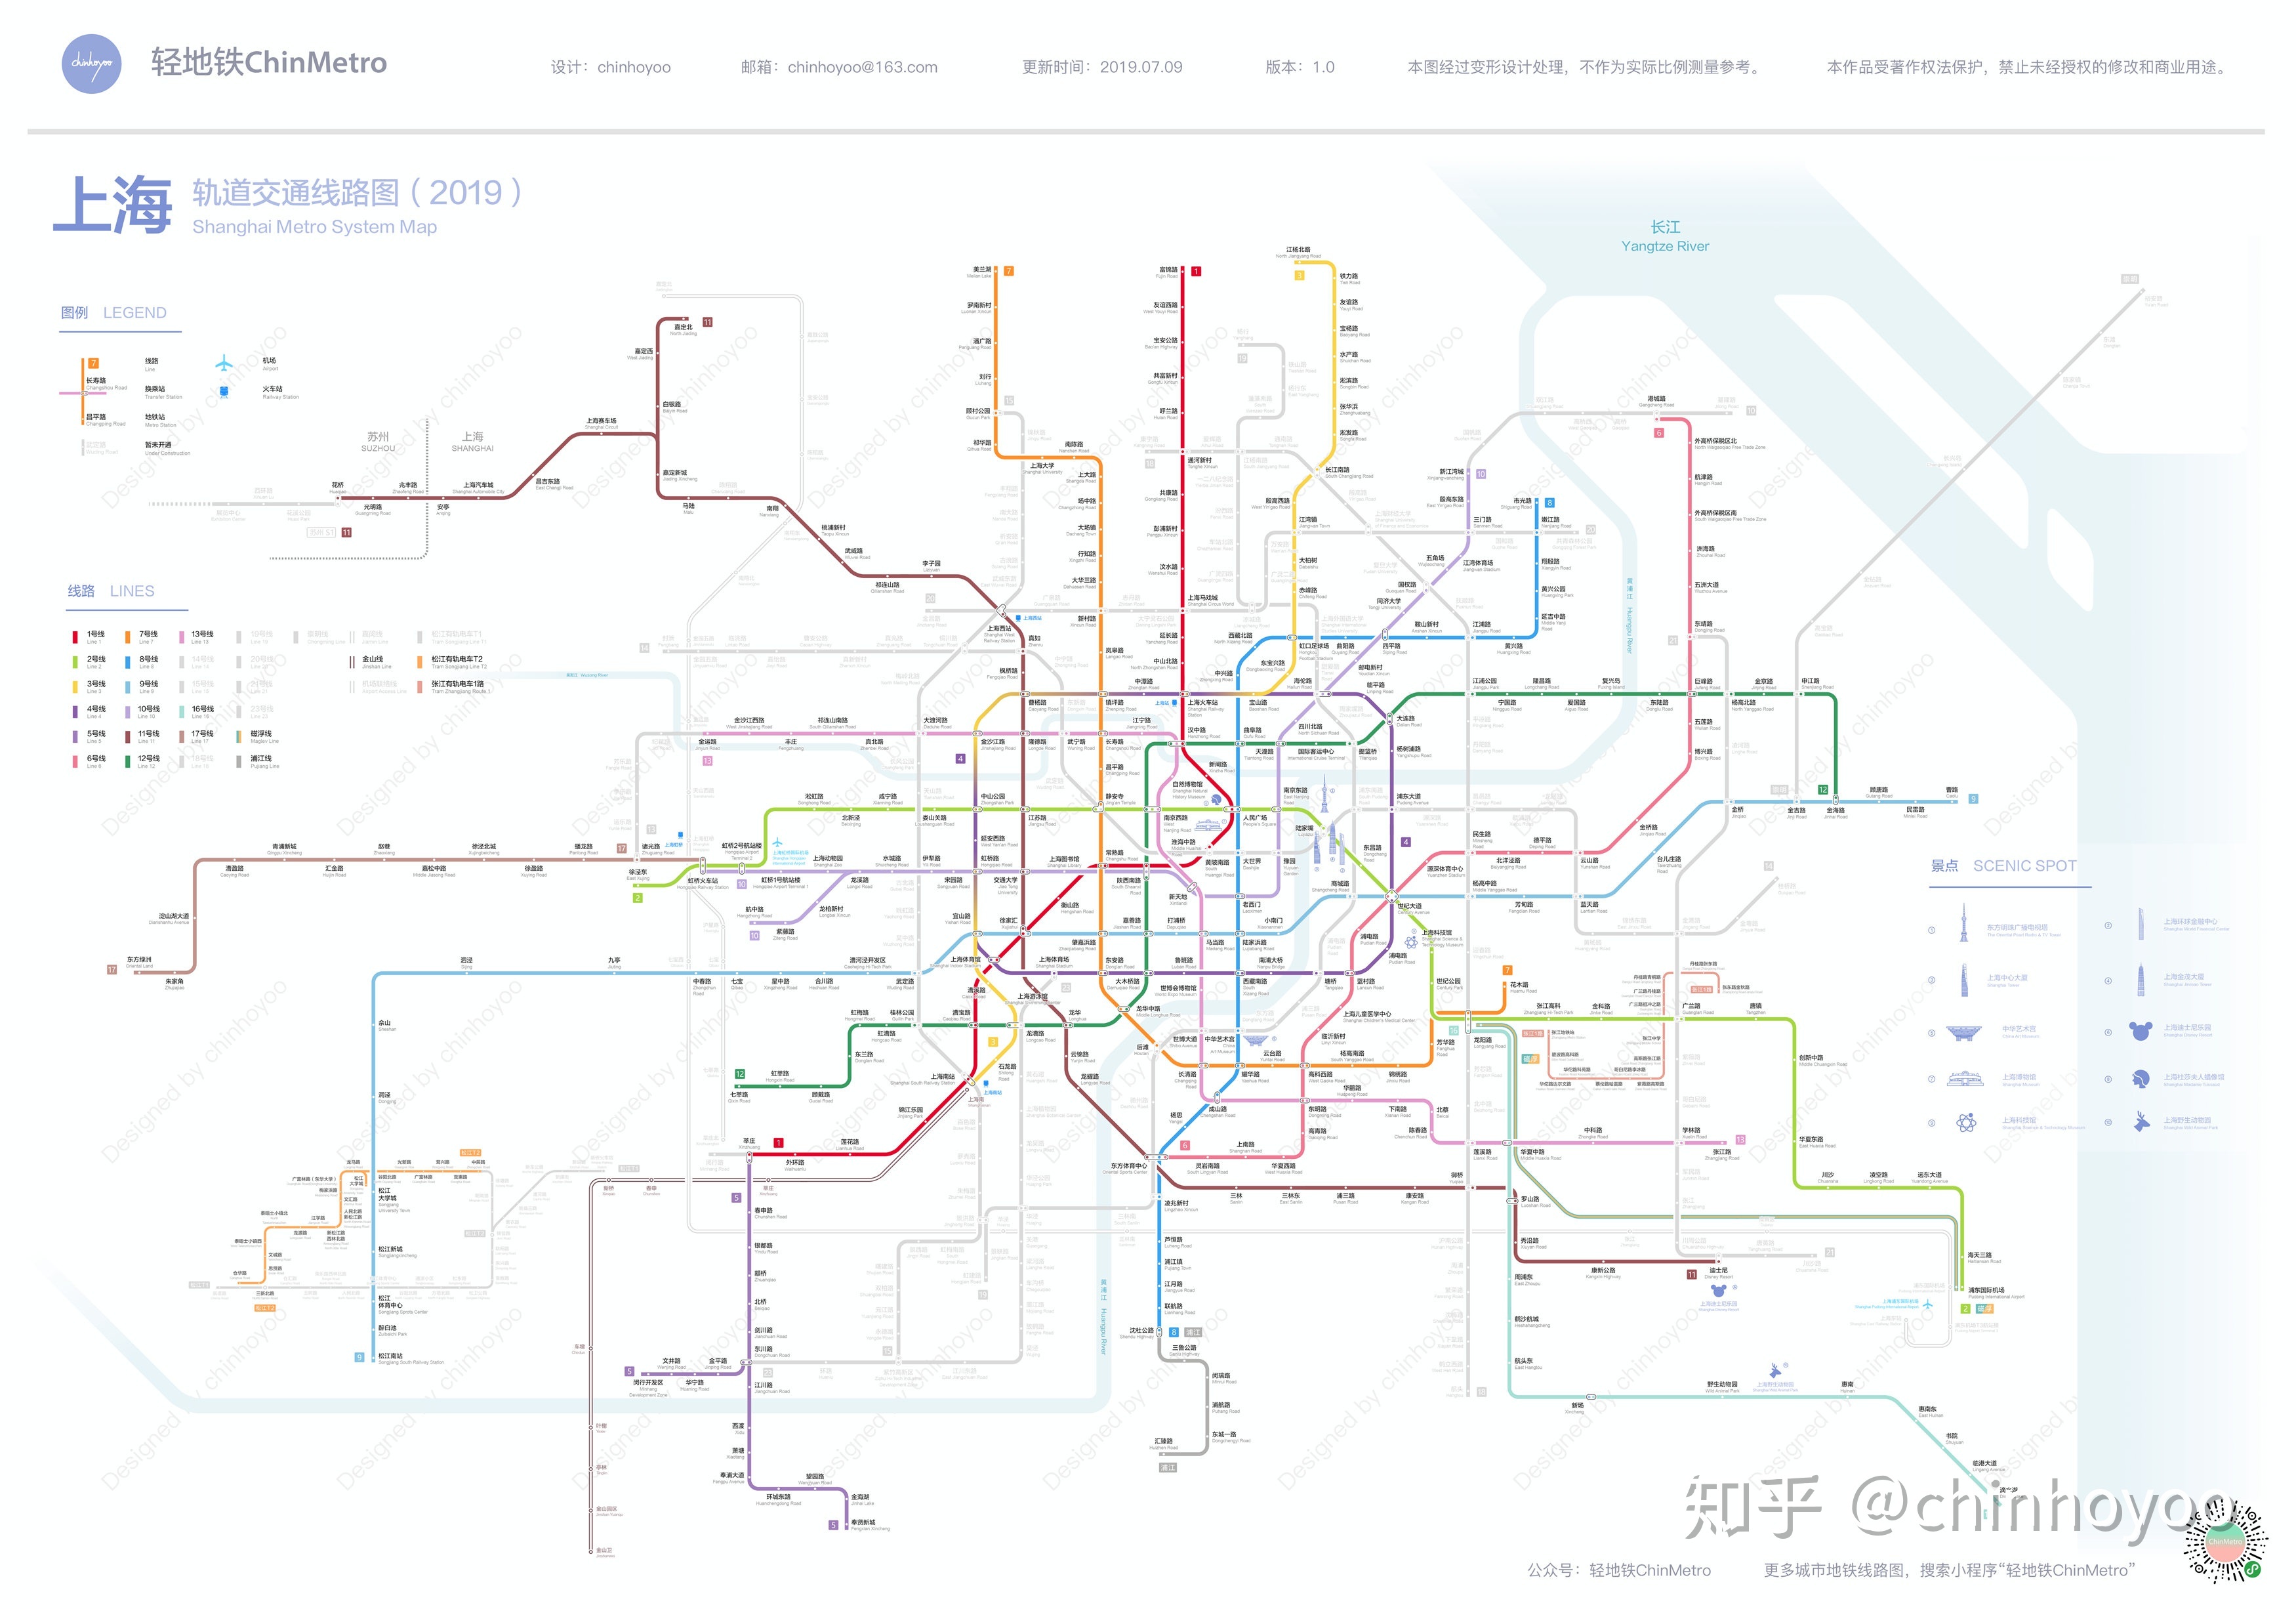 [内带干货的伪攻略]萌新梦幻的无限之旅（布线篇1）--上海|模拟地铁 - 第1张